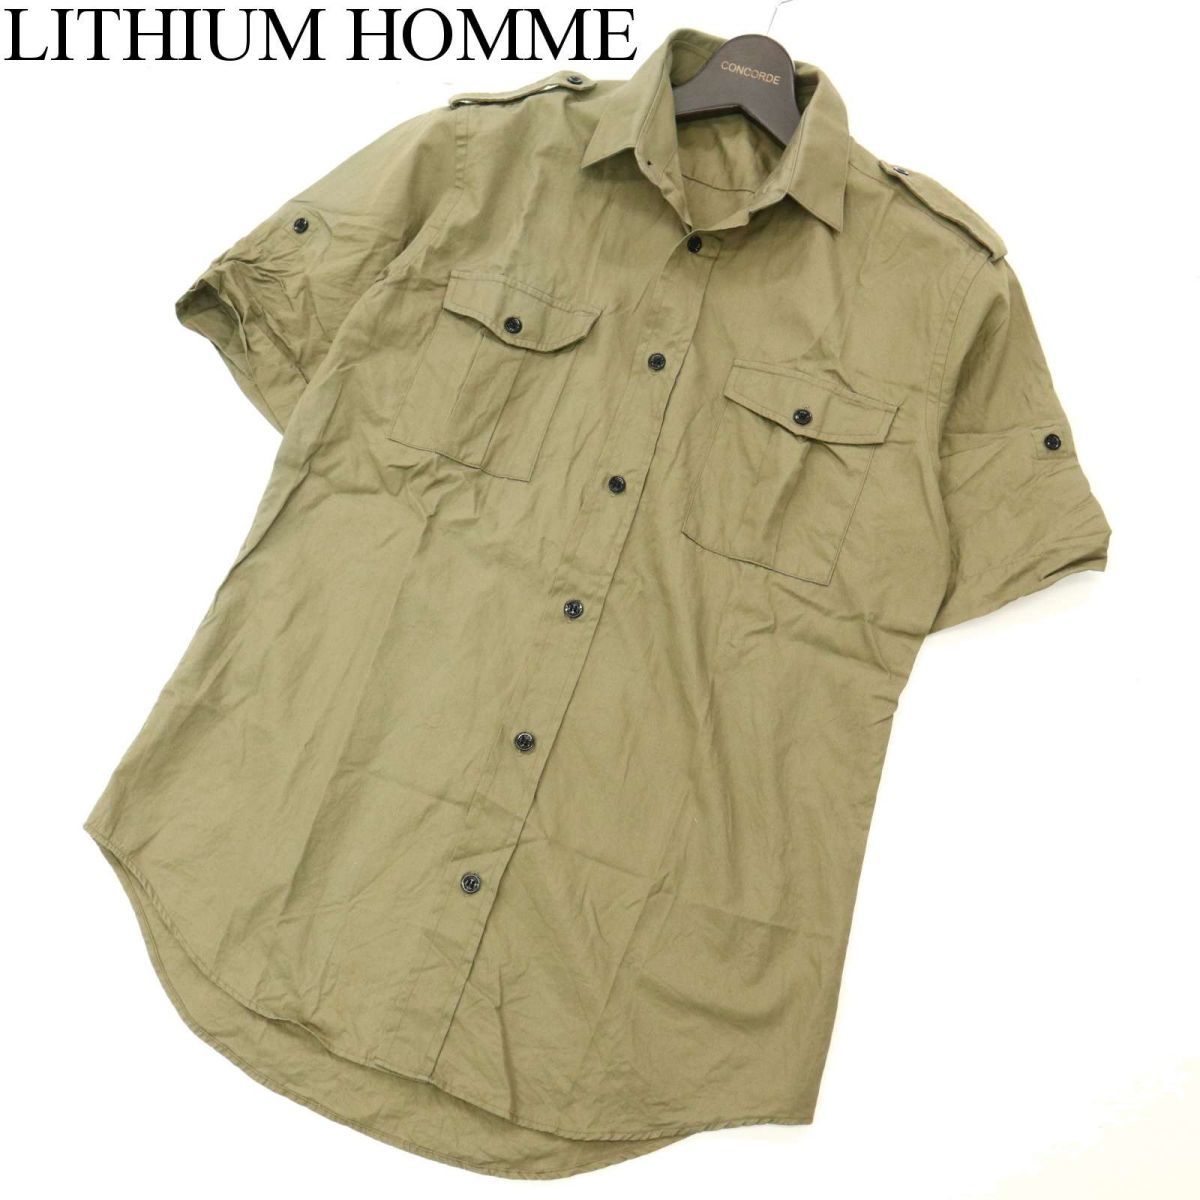 ヤフオク! -「lithium homme 48」(ファッション) の落札相場・落札価格